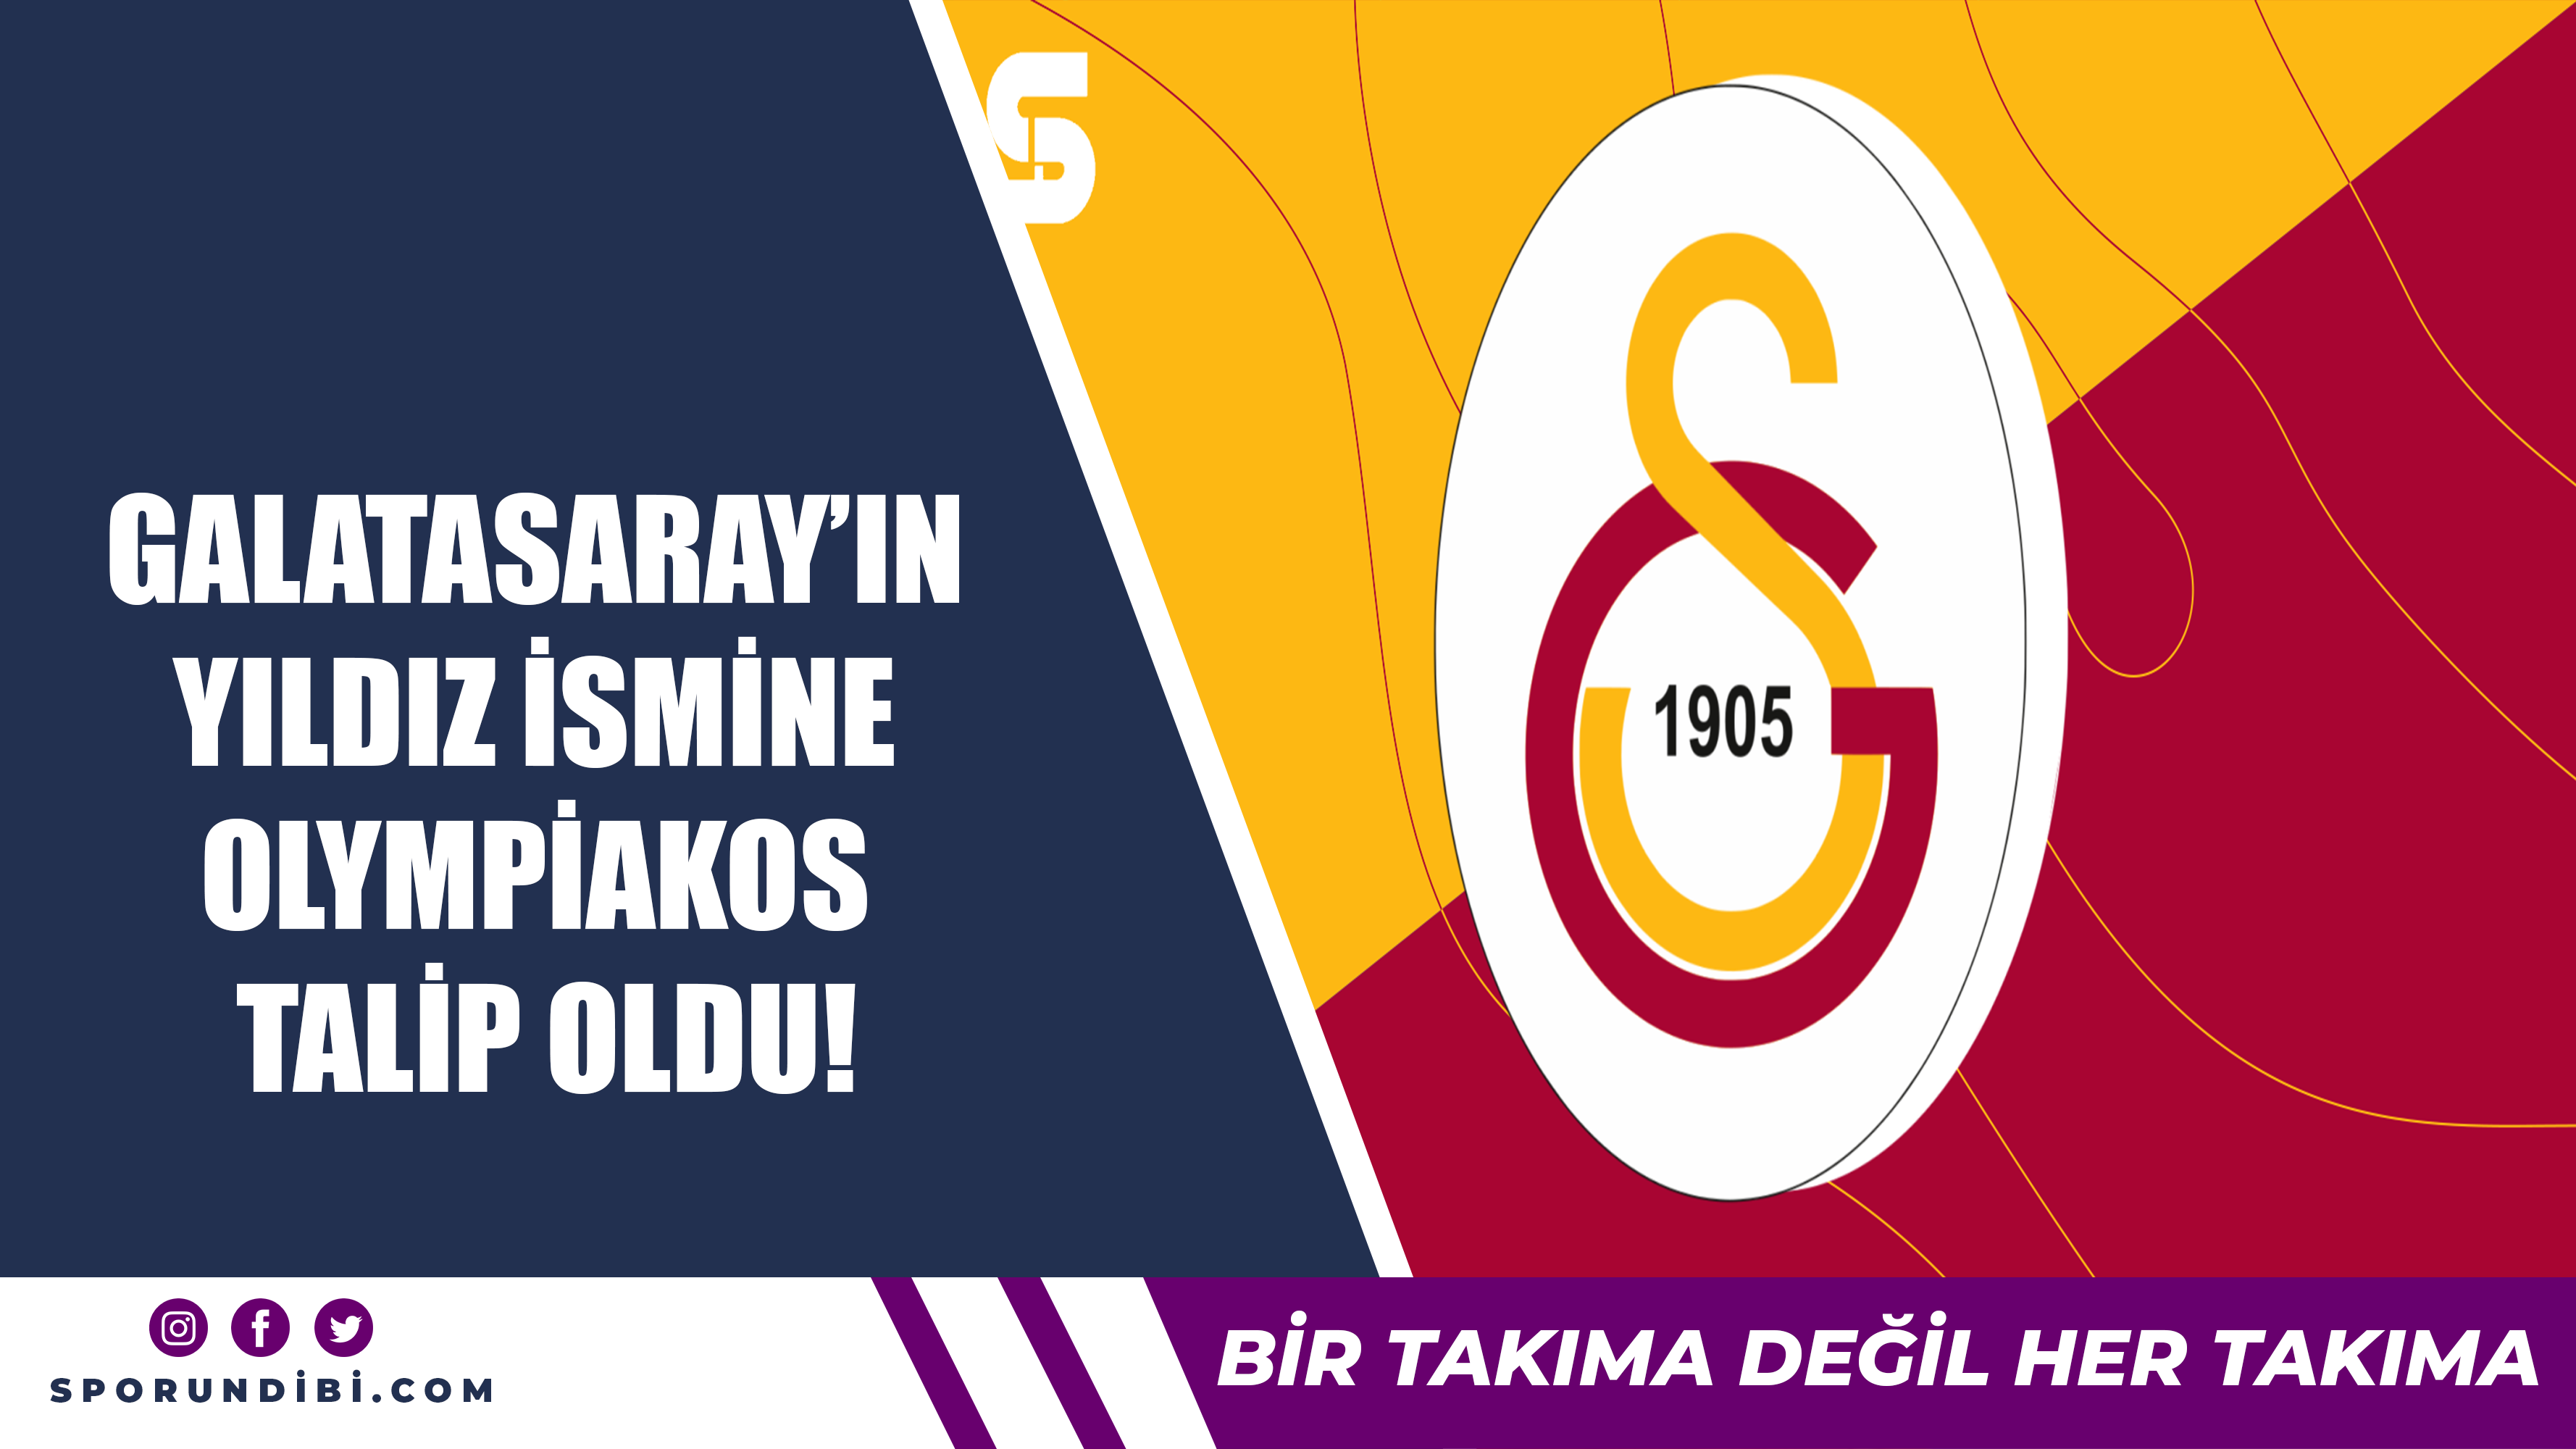 Galatasaray'ın yıldız ismine Olympiakos talip oldu!